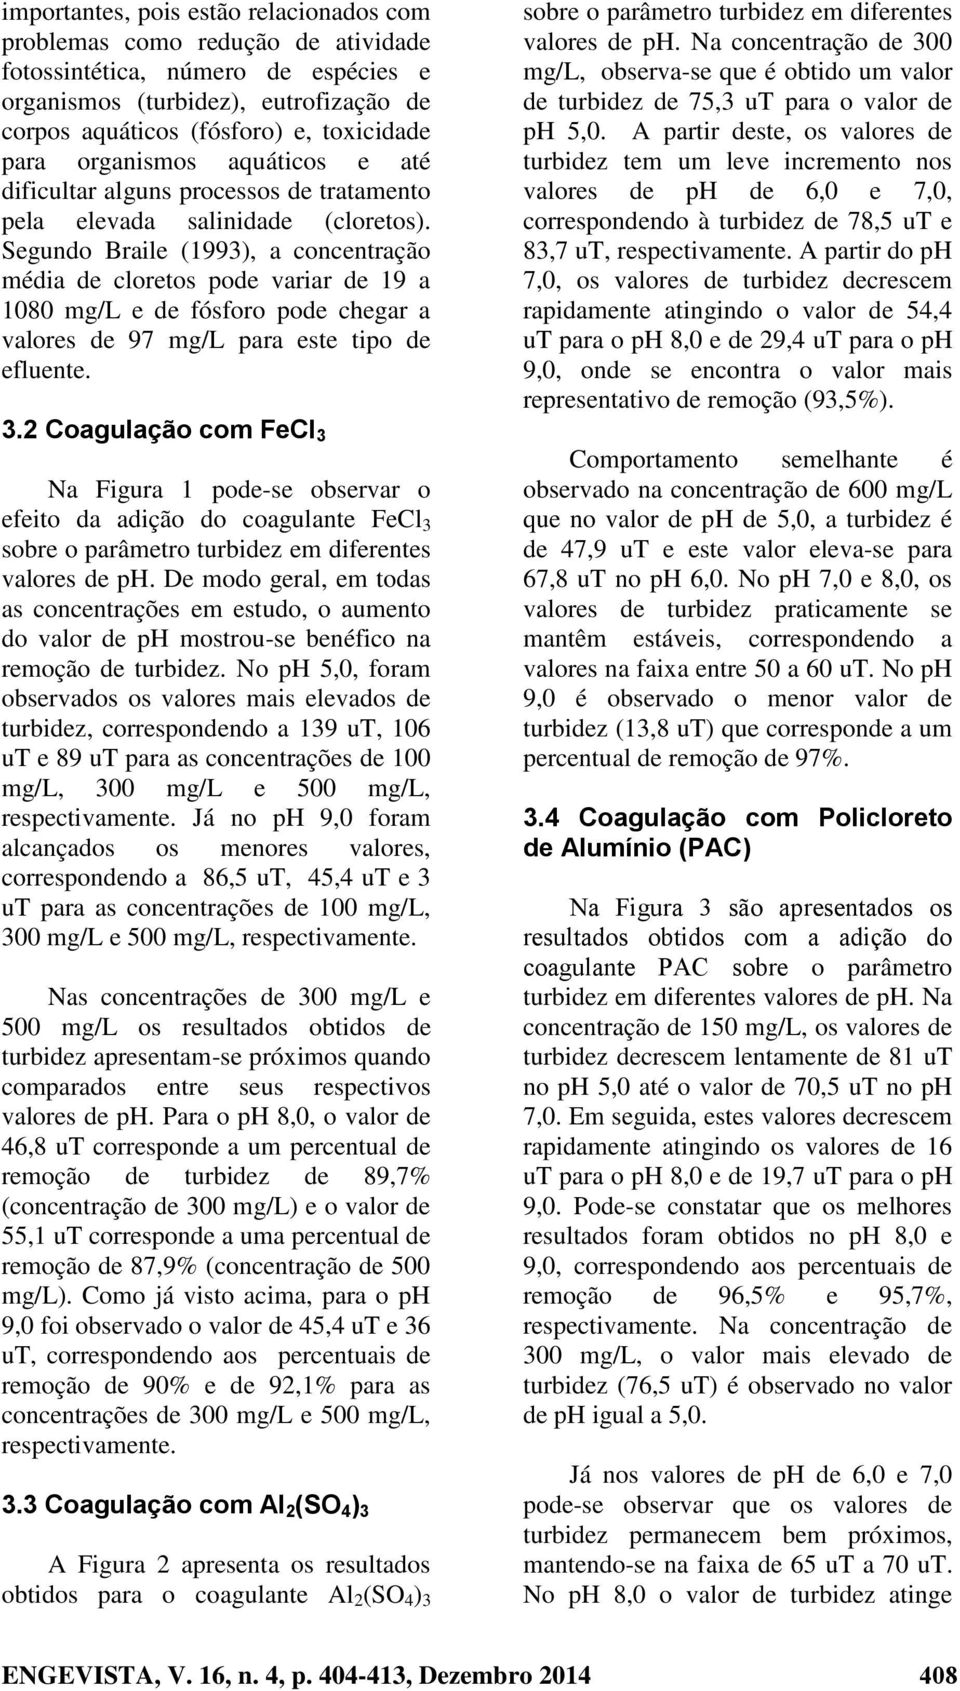 Segundo Braile (1993), a concentração média de cloretos pode variar de 19 a 1080 mg/l e de fósforo pode chegar a valores de 97 mg/l para este tipo de efluente. 3.